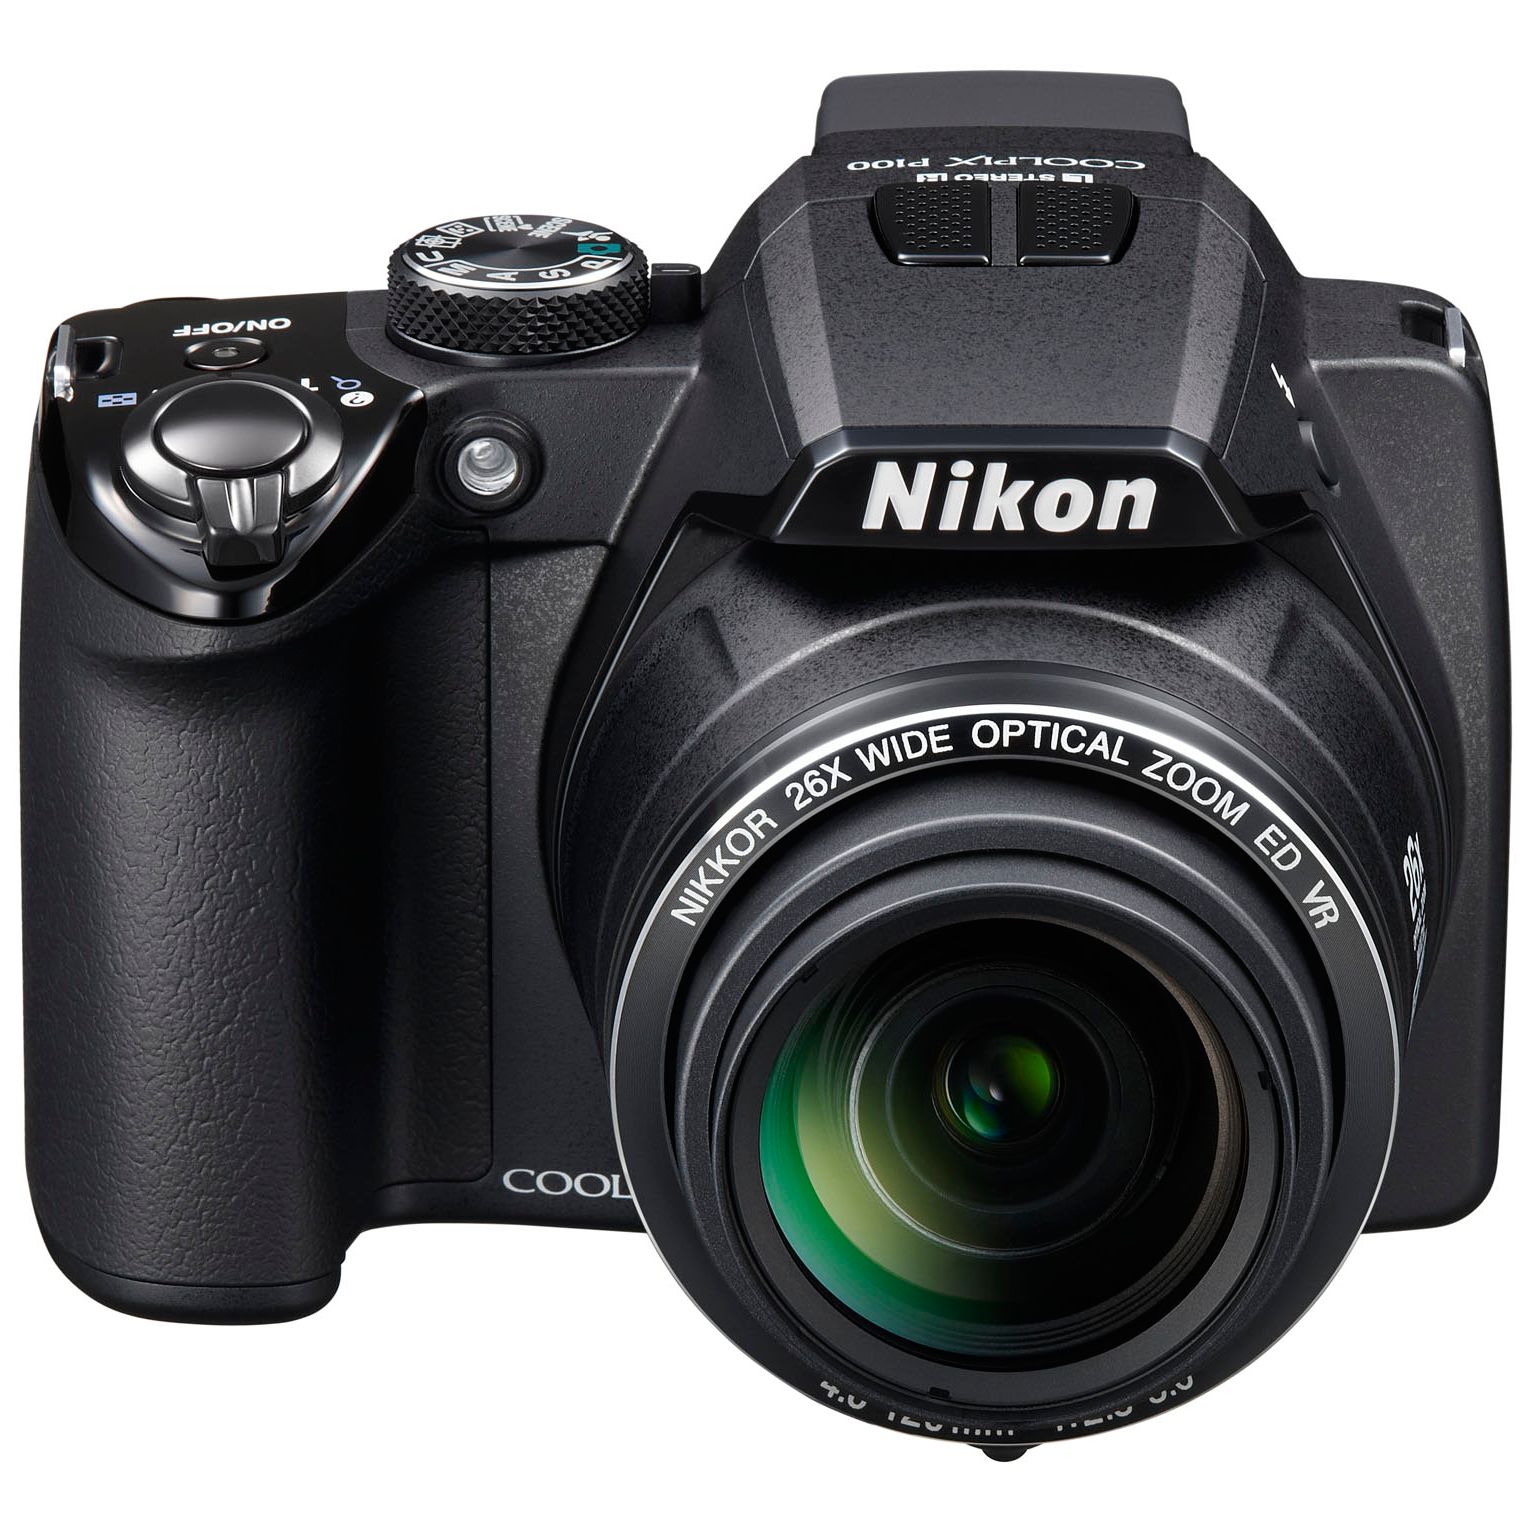 Nikon Coolpix P100 Digital Camera, Black at JohnLewis